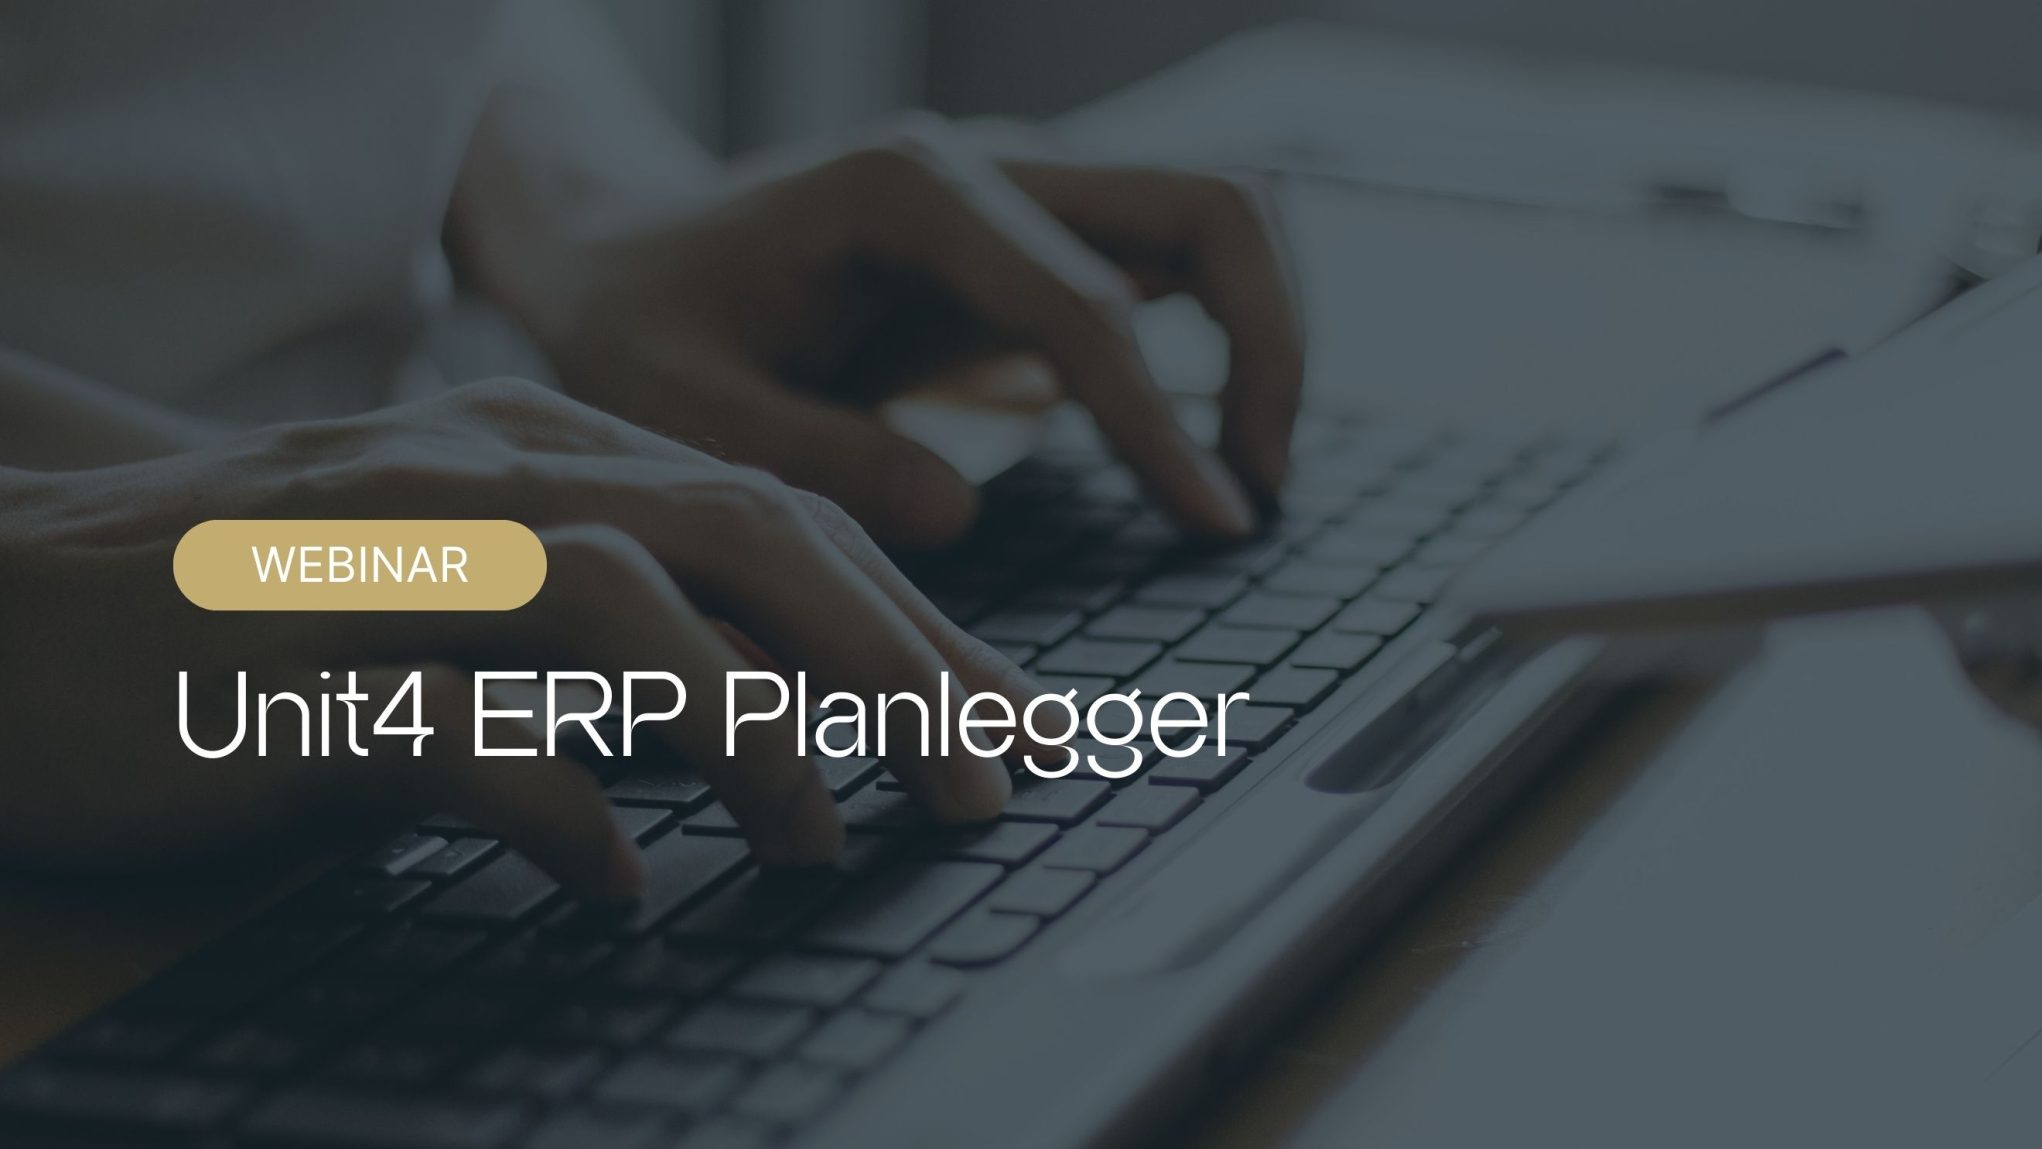 Webinar Unit4 ERP Planlegger